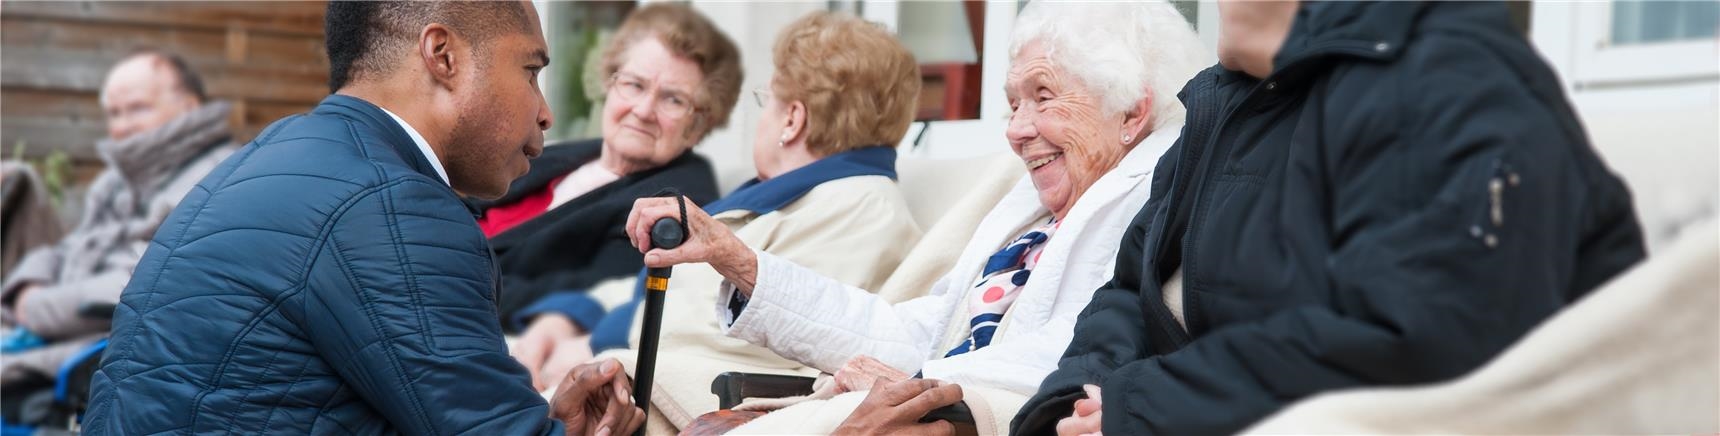 Altenpfleger hockt vor sitzender Seniorin und beide blicken sich freundlich an